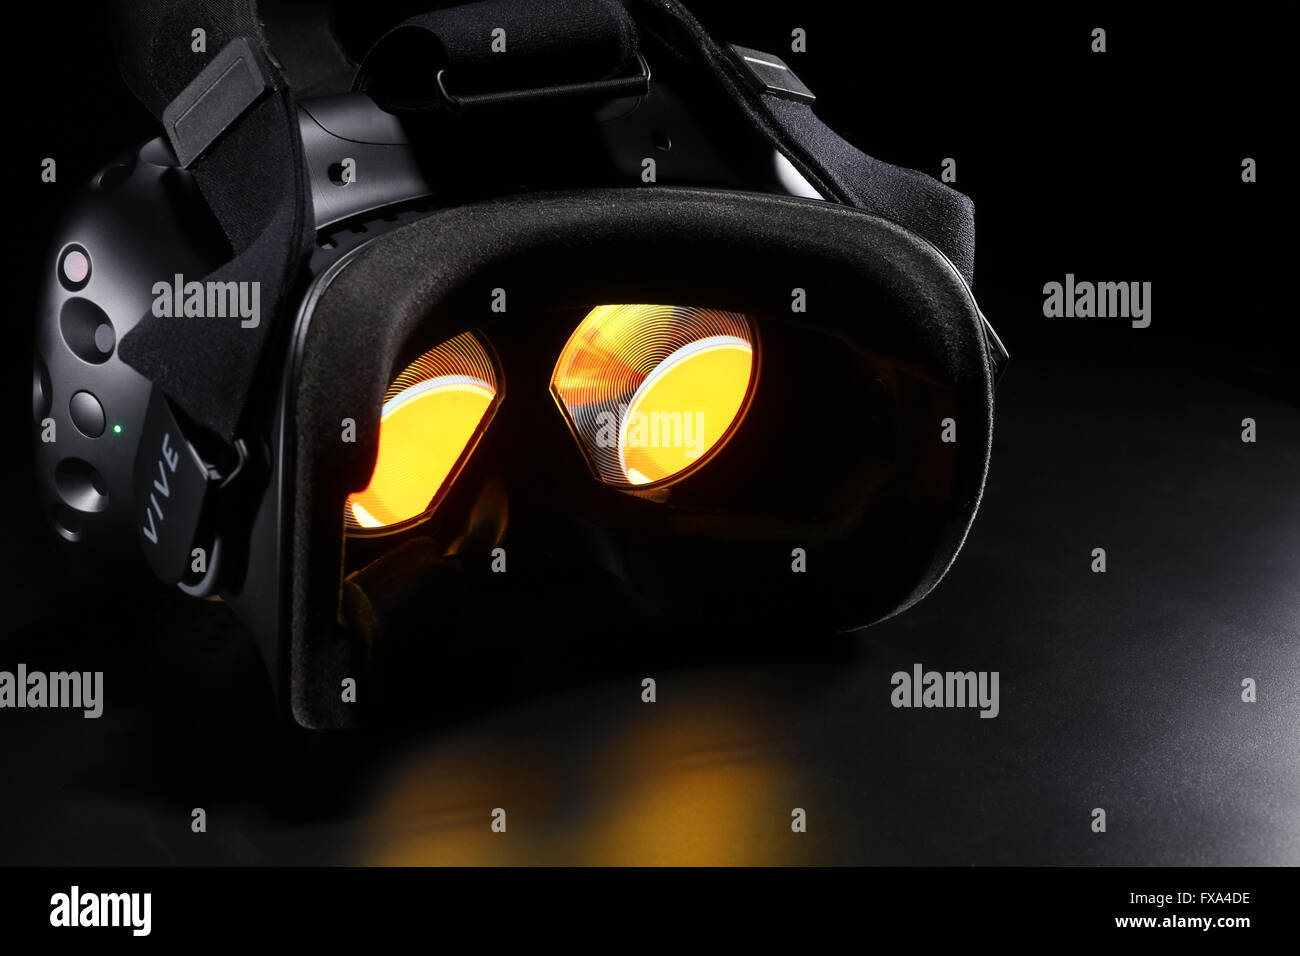 HTC Vive casco de realidad virtual Fotografía de stock - Alamy